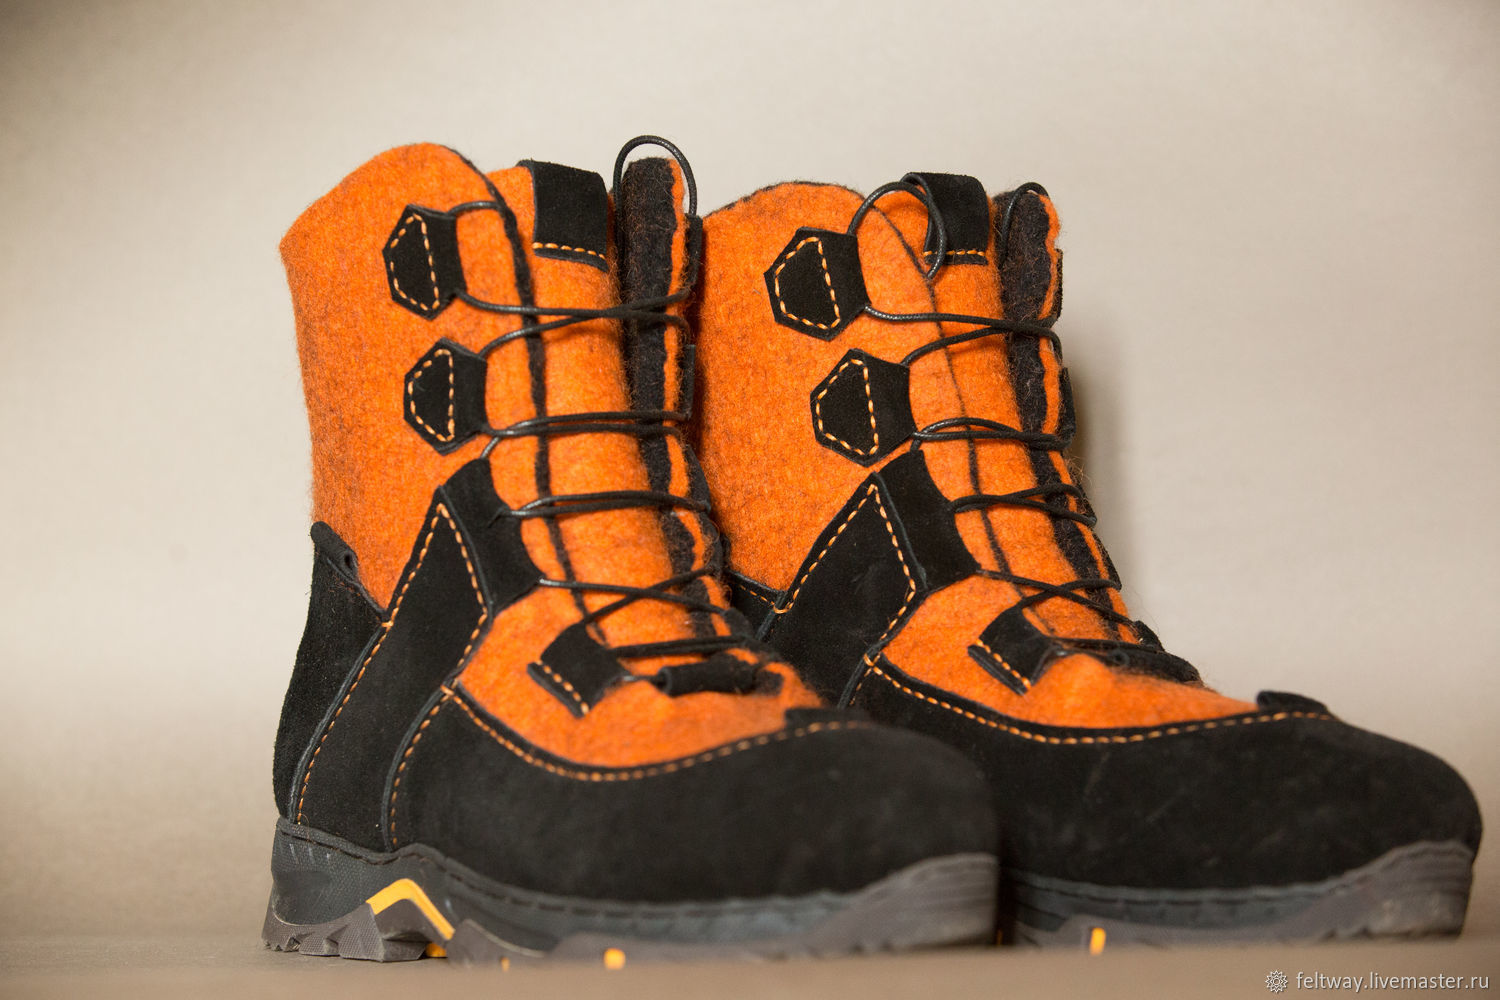 Зимняя обувь мужская экко на валберис кроссовки ромика купить на валберис